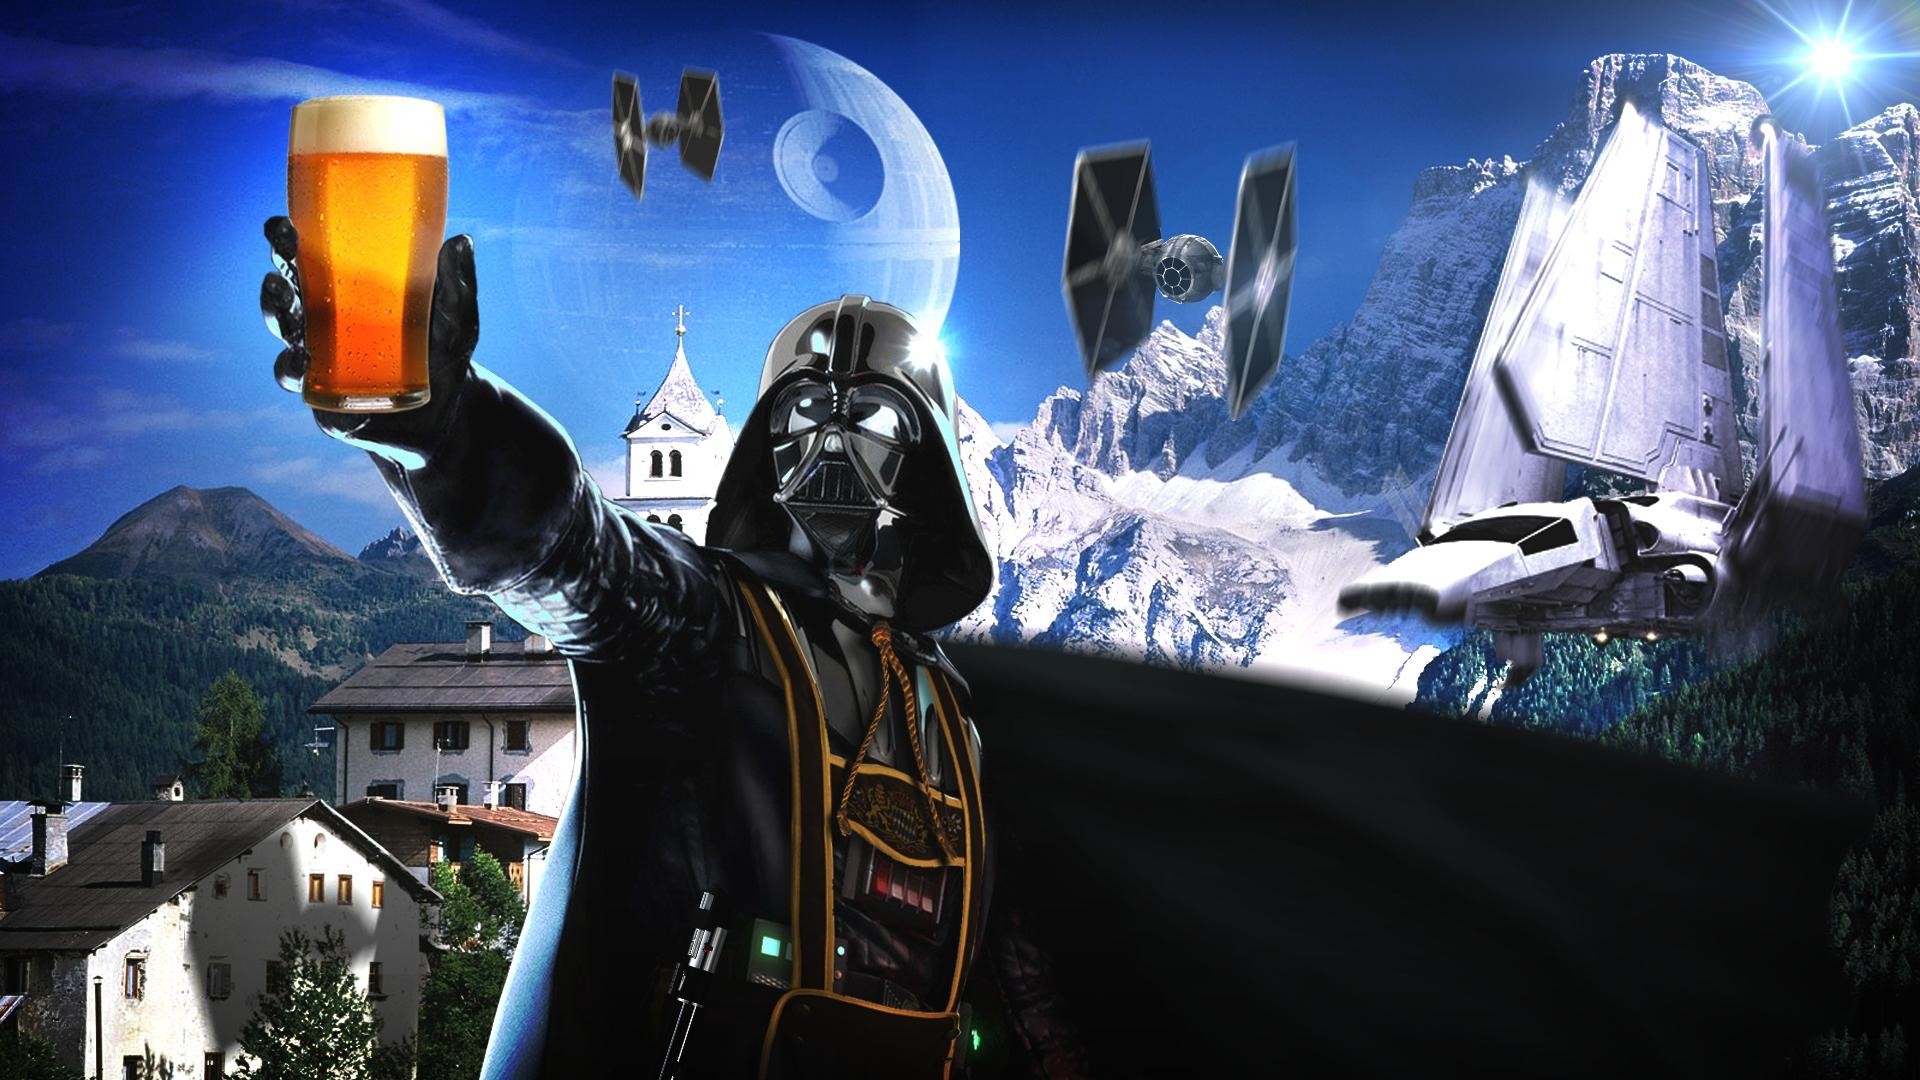 Beers Star Wars Darth Vader Sith German Alps Sci Fi Science Spaceships Spacecraft Wide